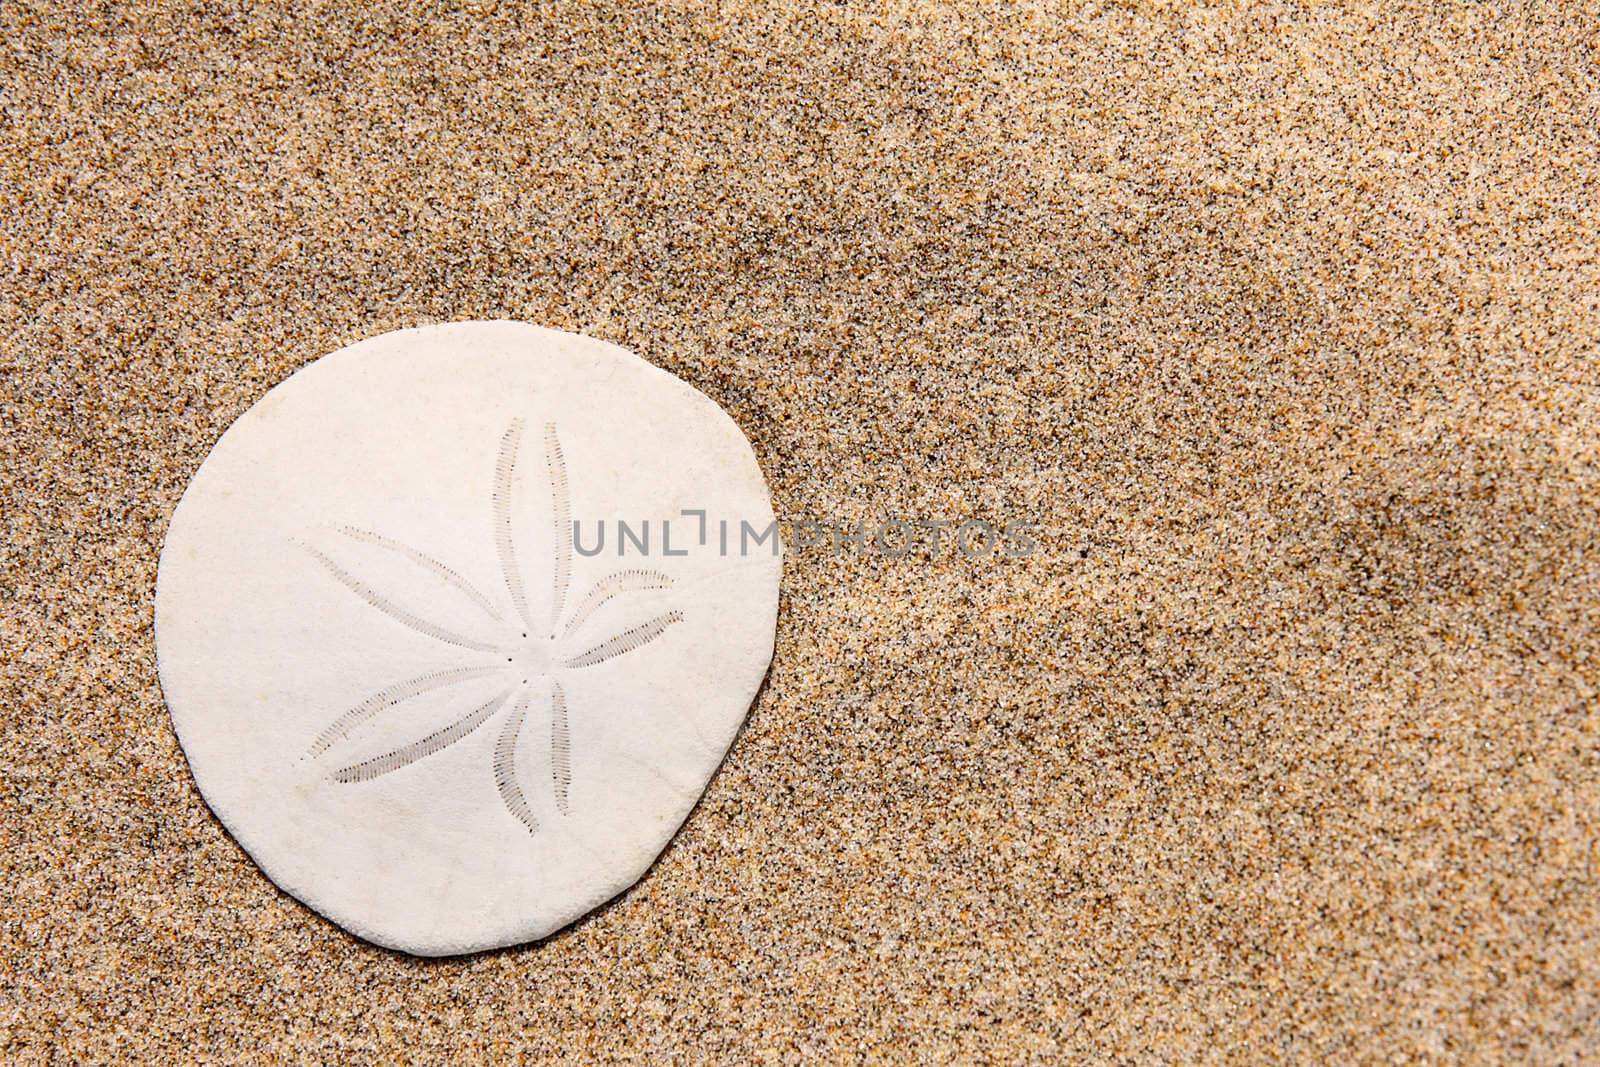 Sand dollar on the beach by svanblar